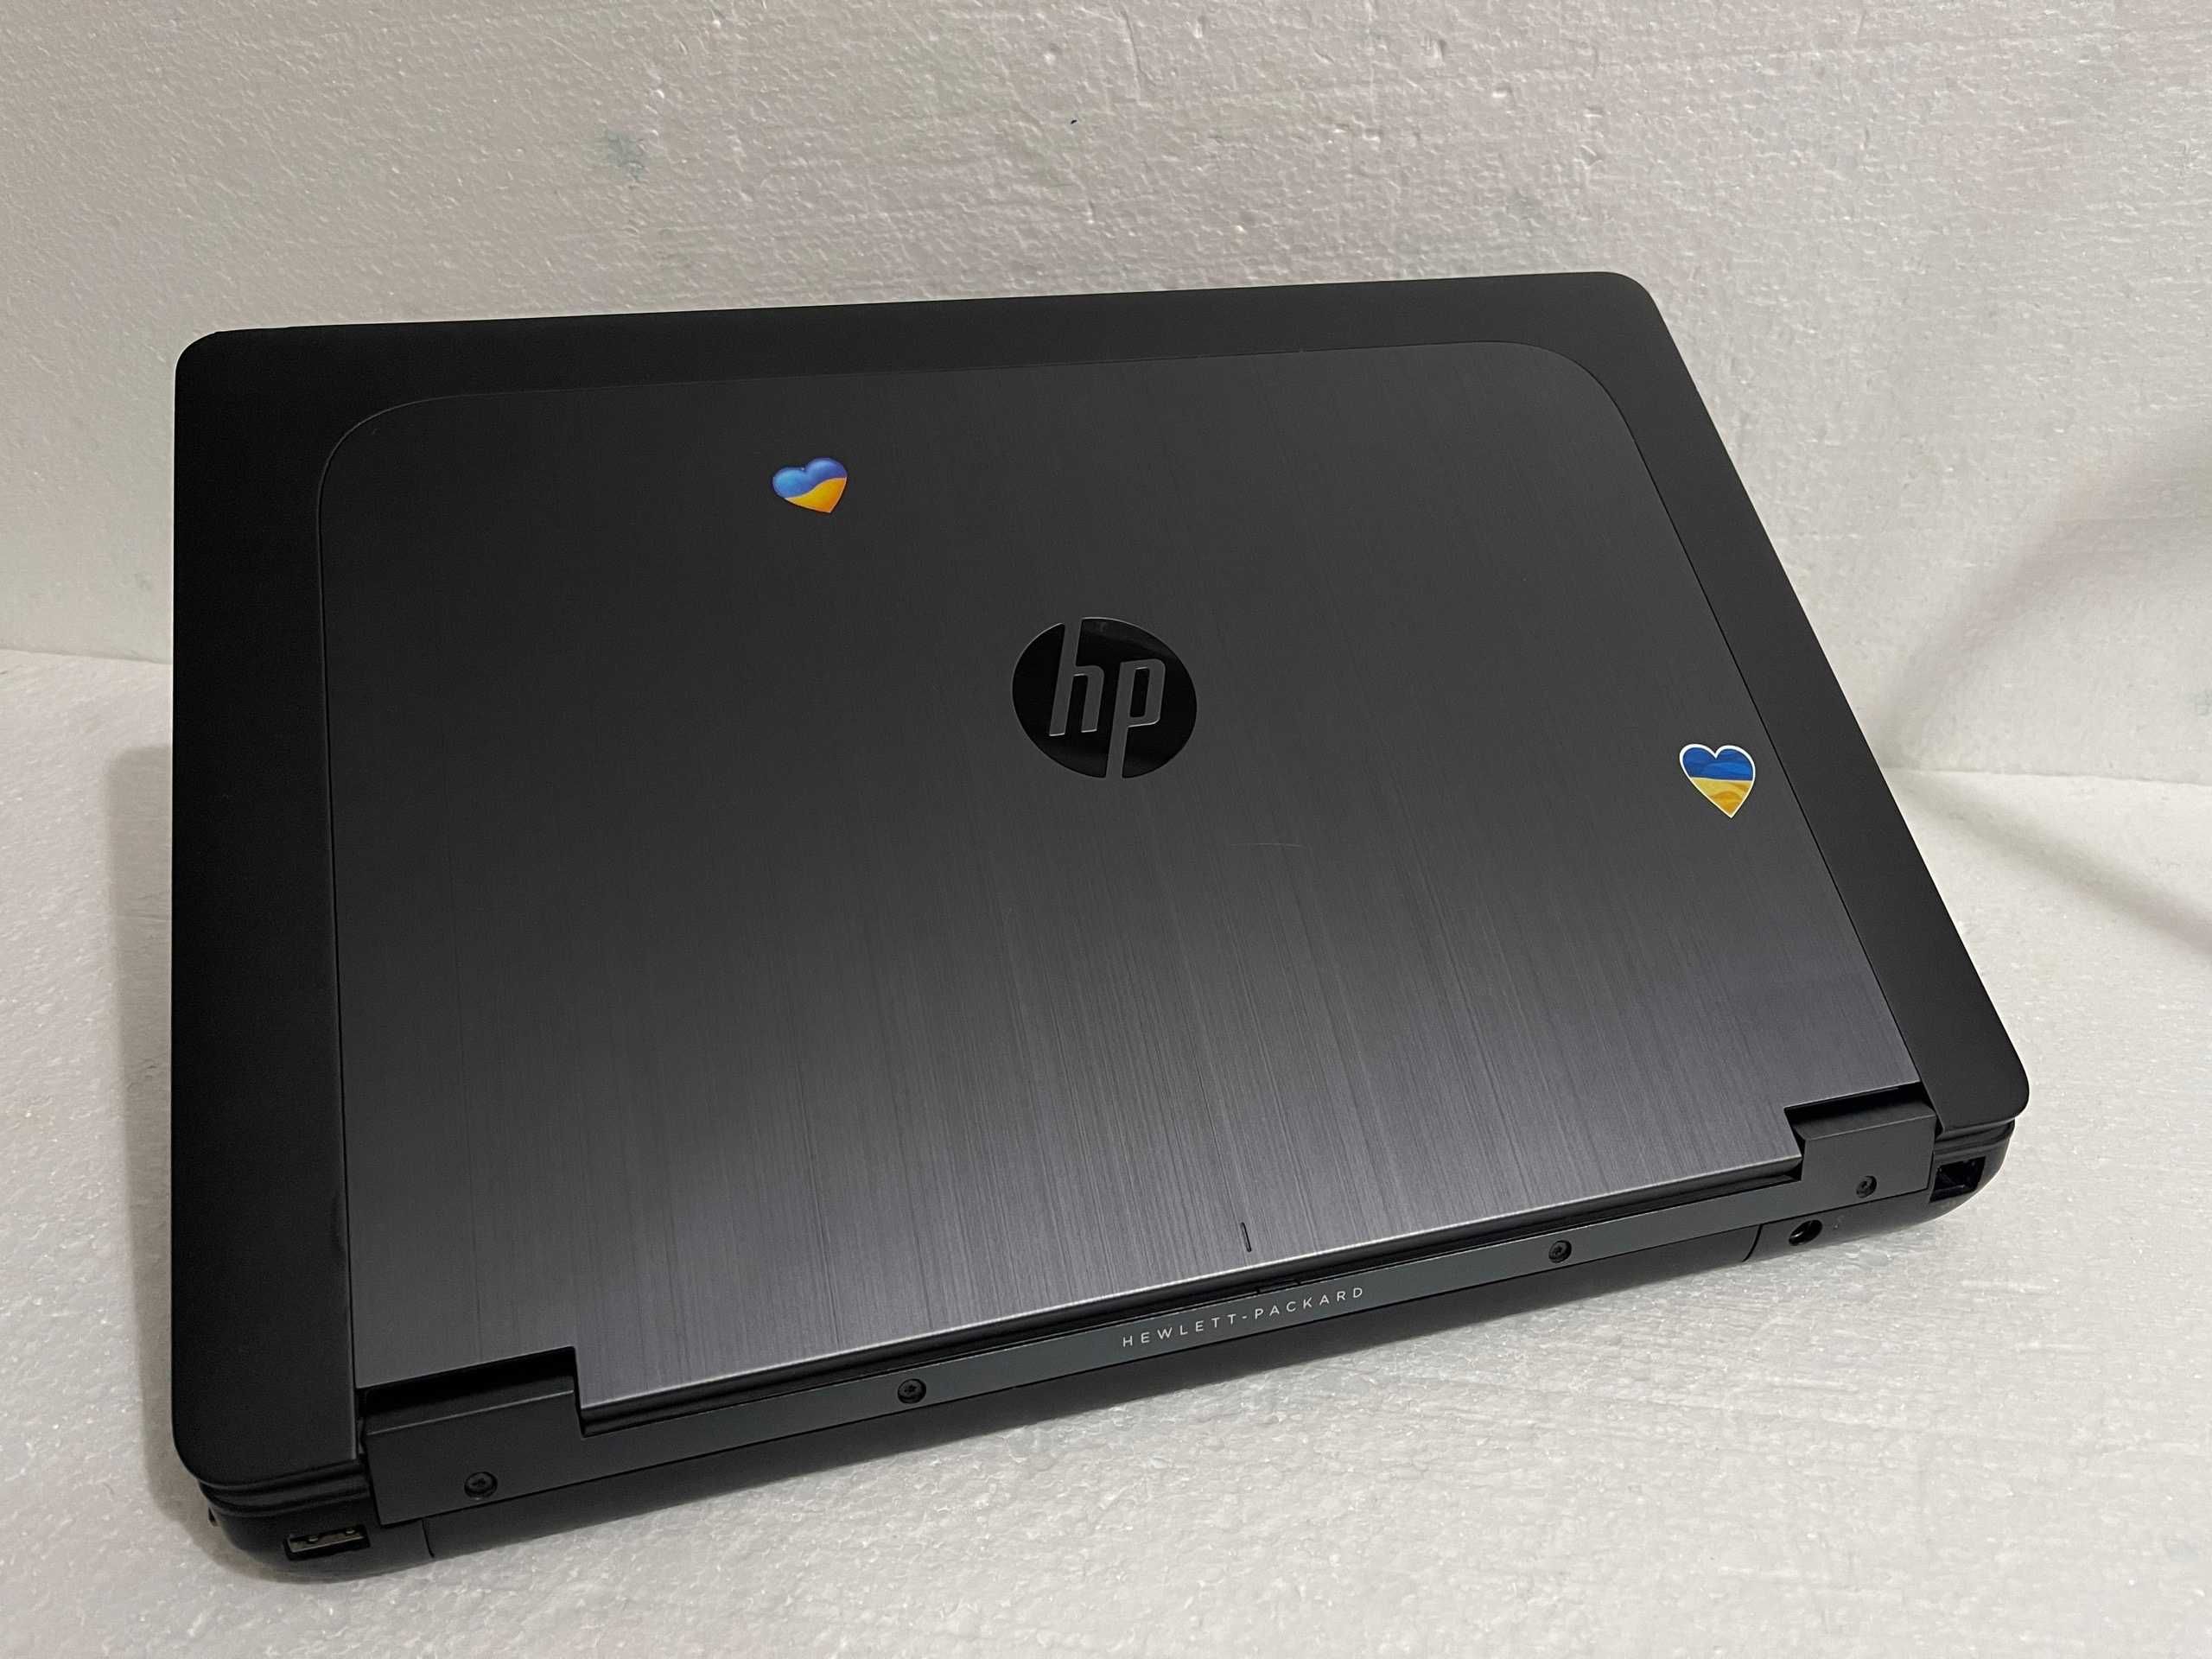 Игровой ЗВЕРЬ! HP ZBook 15 + (Intel Core i7) + 16 ГБ RAM + Видео GDDR5